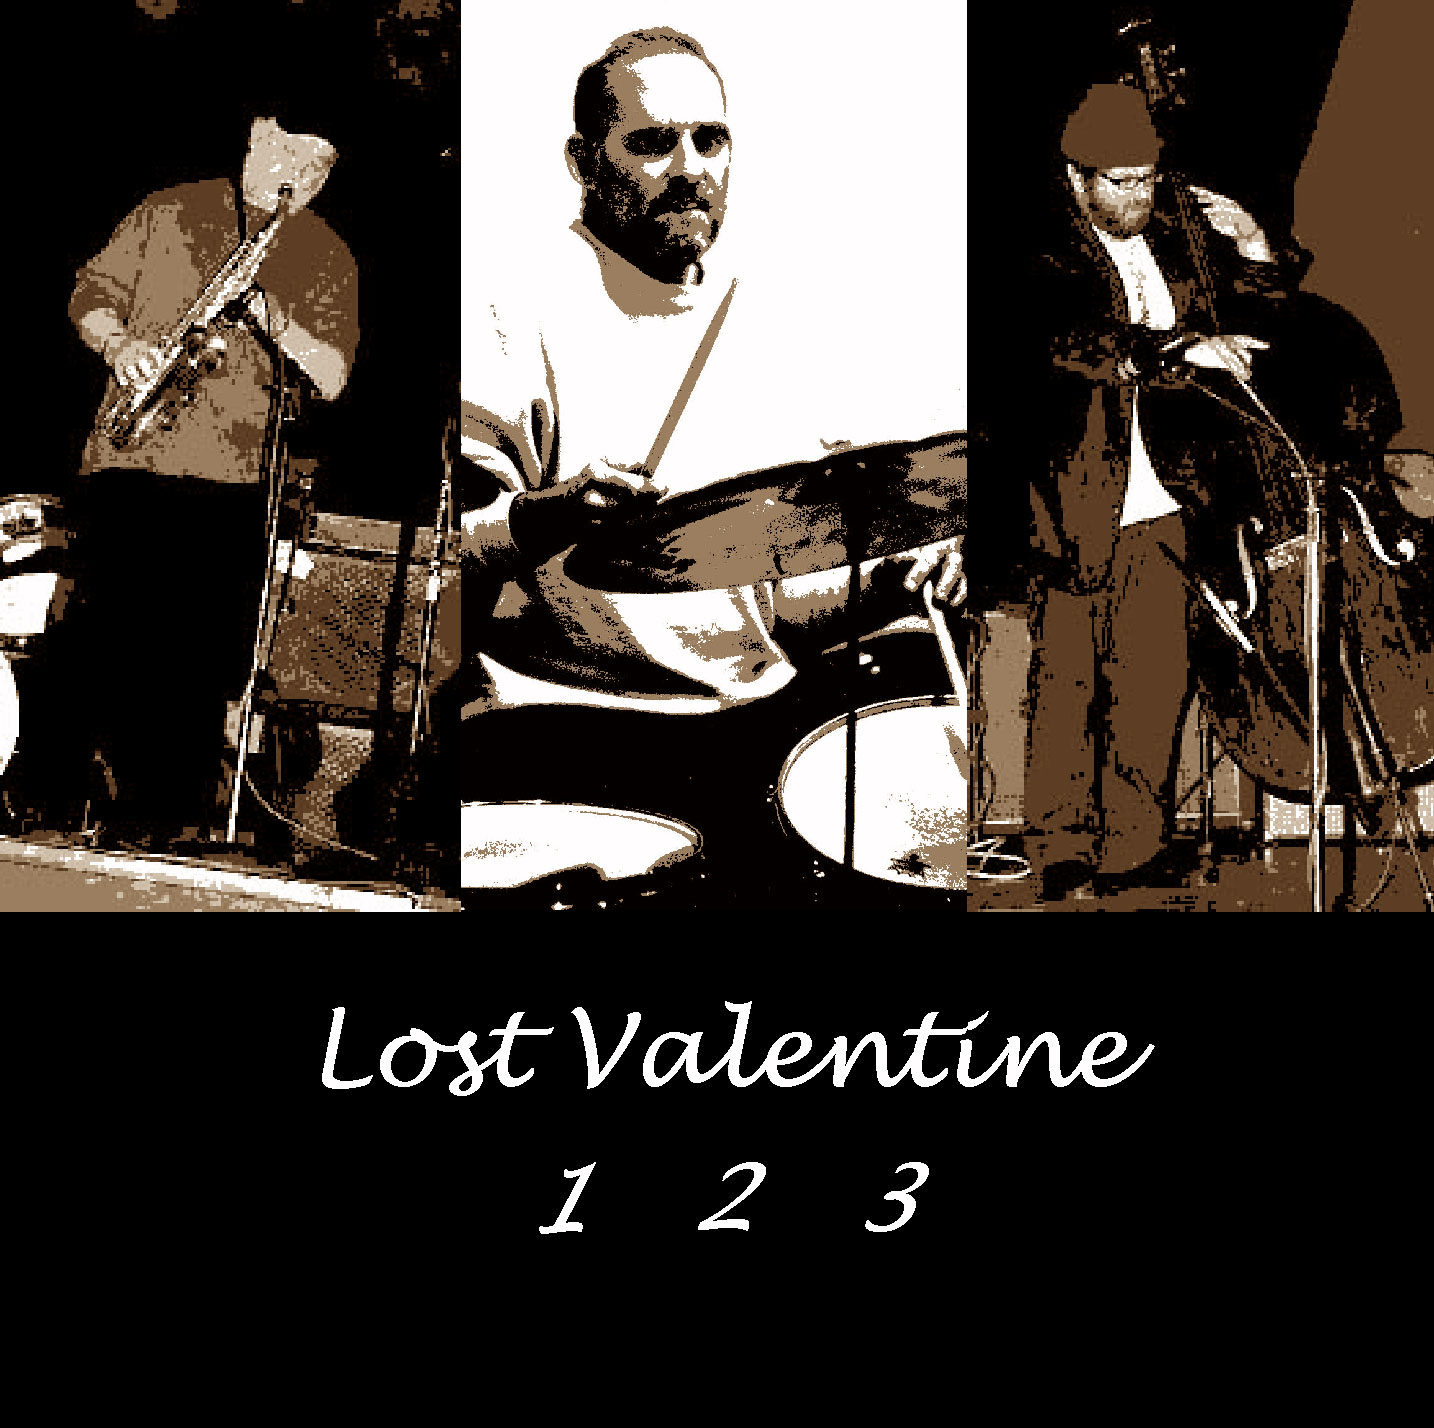 Lost Valentine: 1 2 3